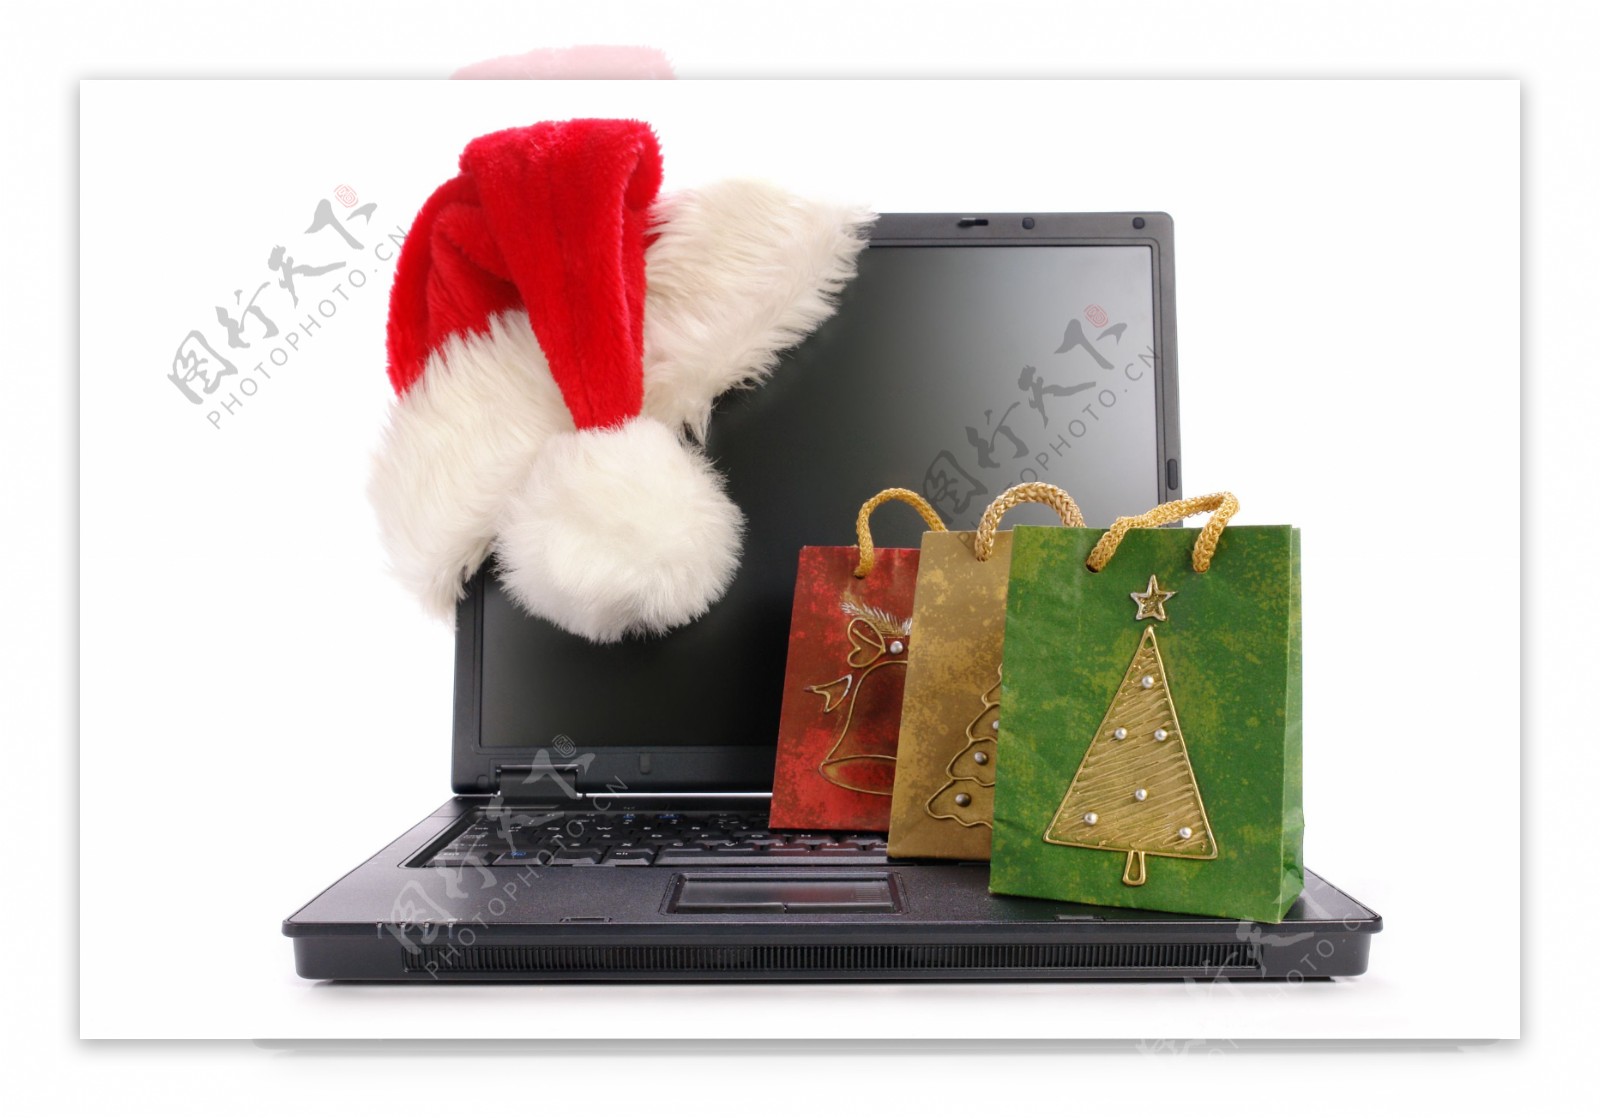 圣诞购物袋与电脑